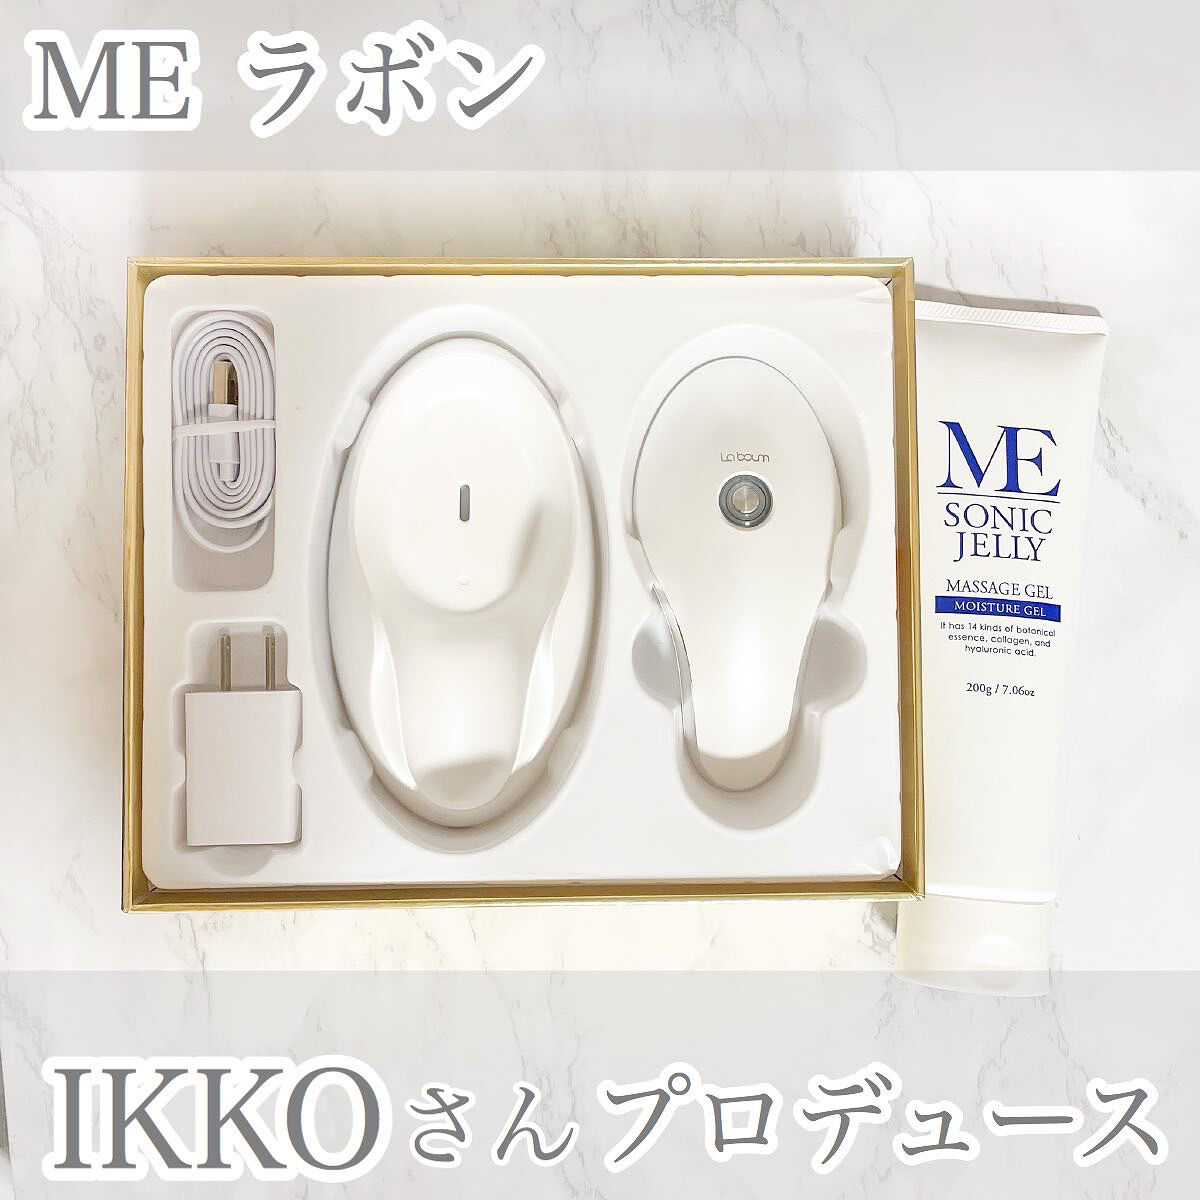 【福袋セール】 MEラボン 美顔器 IKKOさんプロデュース asakusa.sub.jp